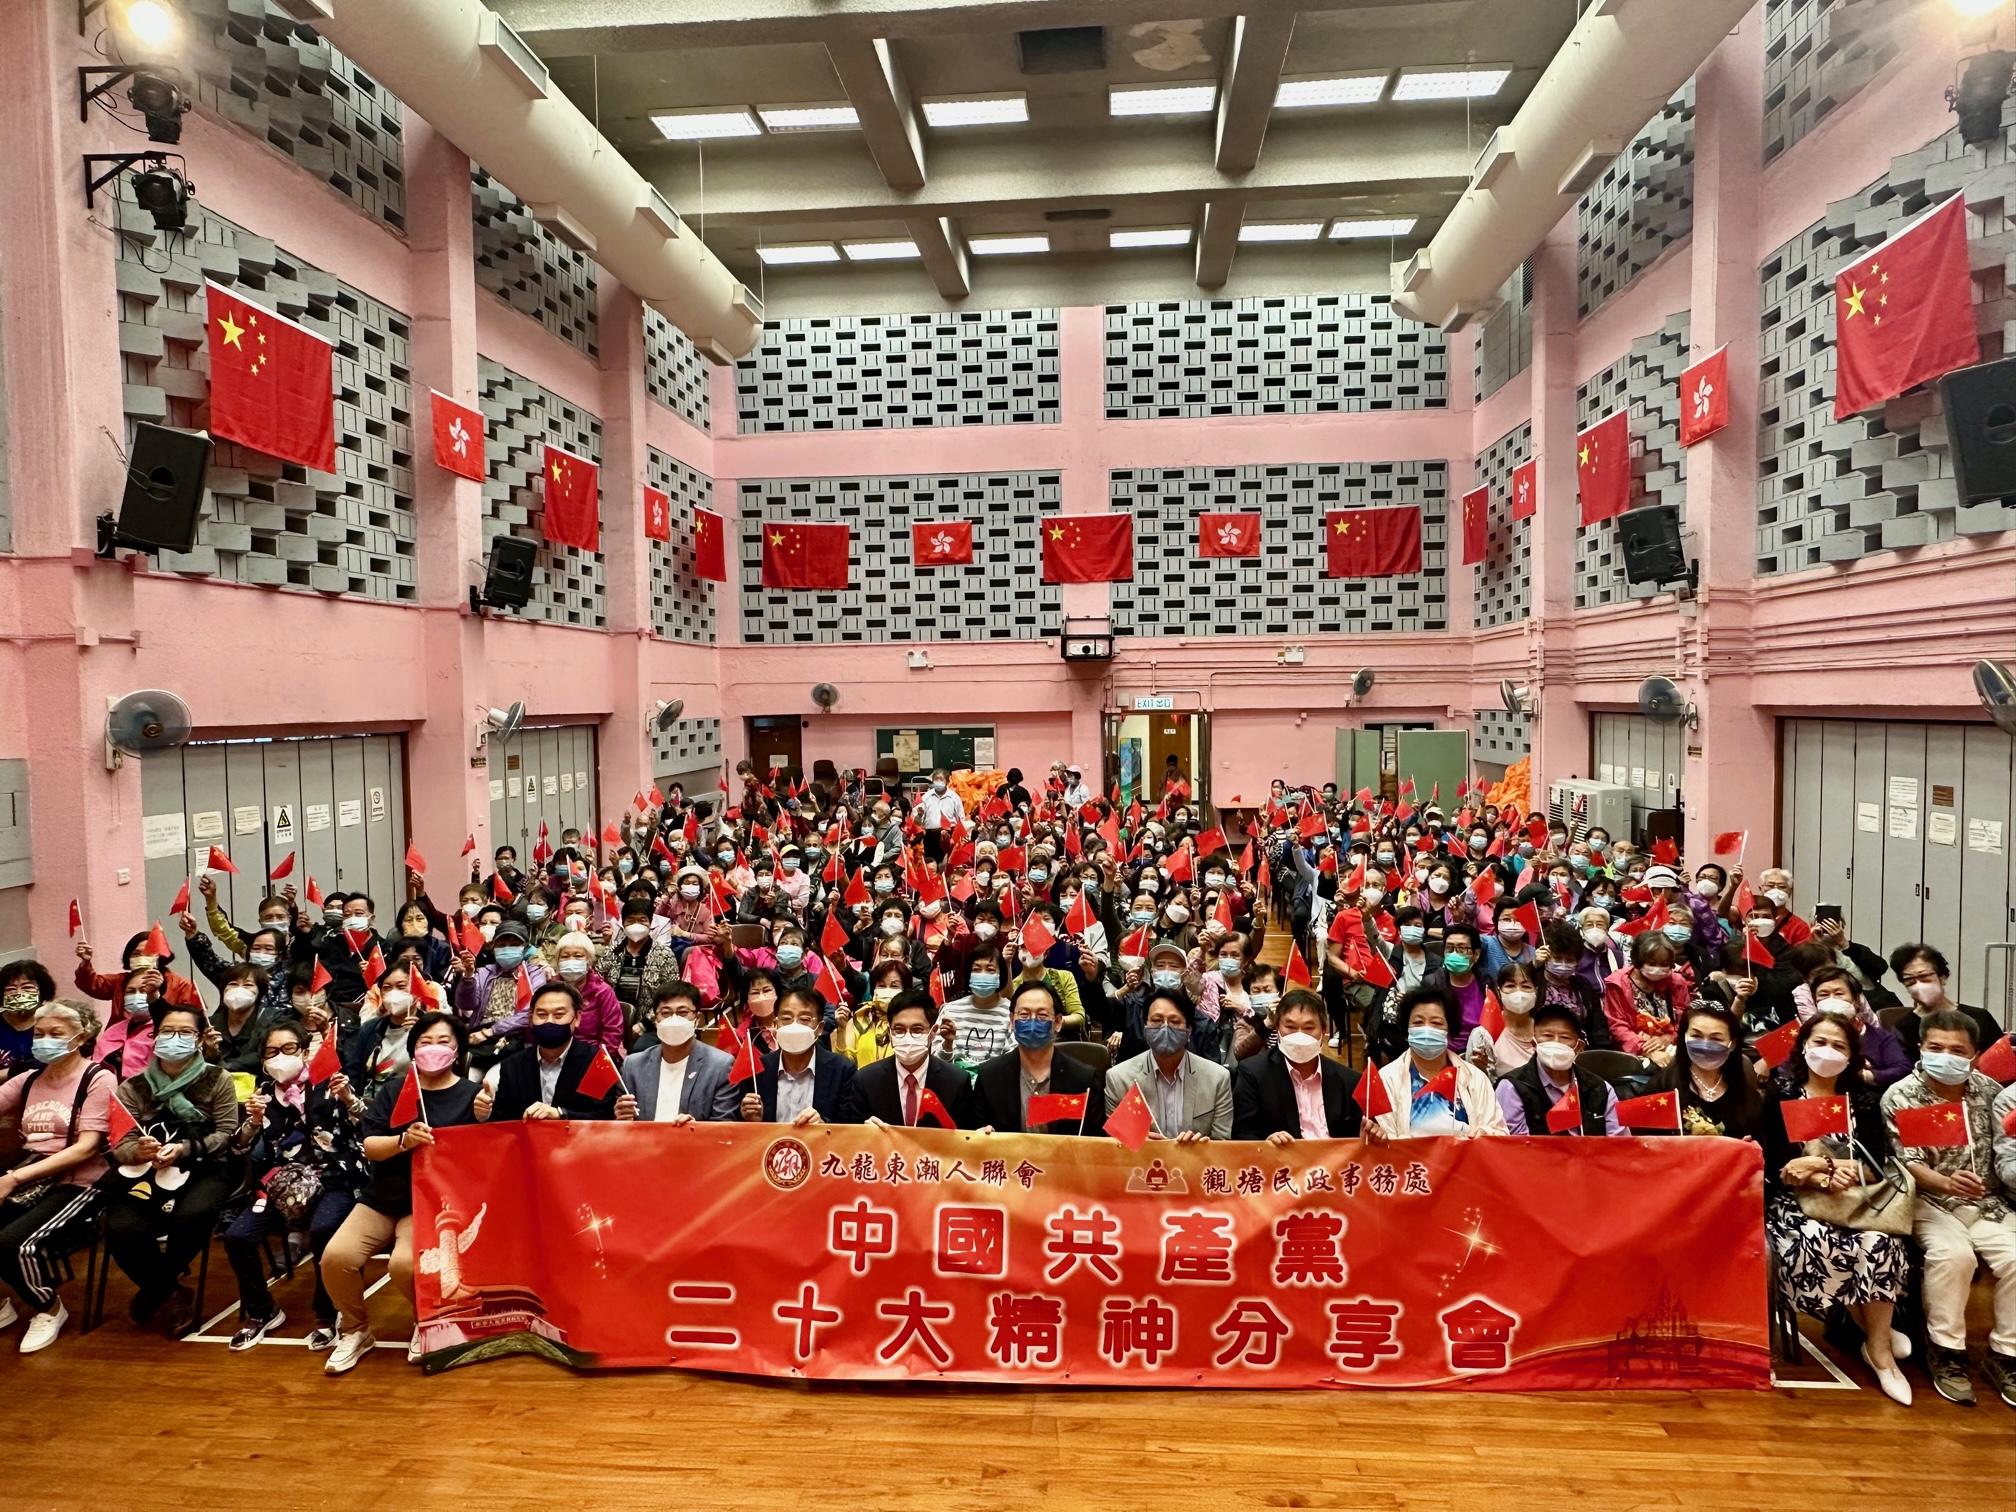 观塘民政事务处在十一月四日联同九龙东潮人联会，在启业社区会堂举办「中国共产党二十大精神分享会」。图示分享会上的嘉宾和与会者。